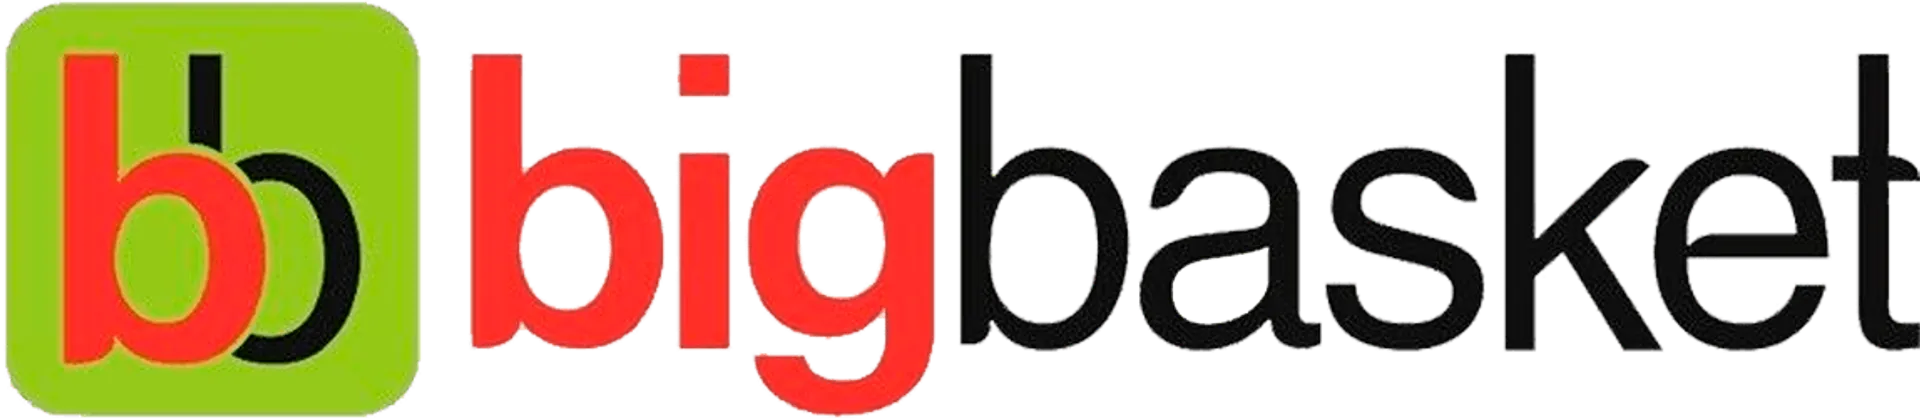 BIGBASKET logo. Current catalogue